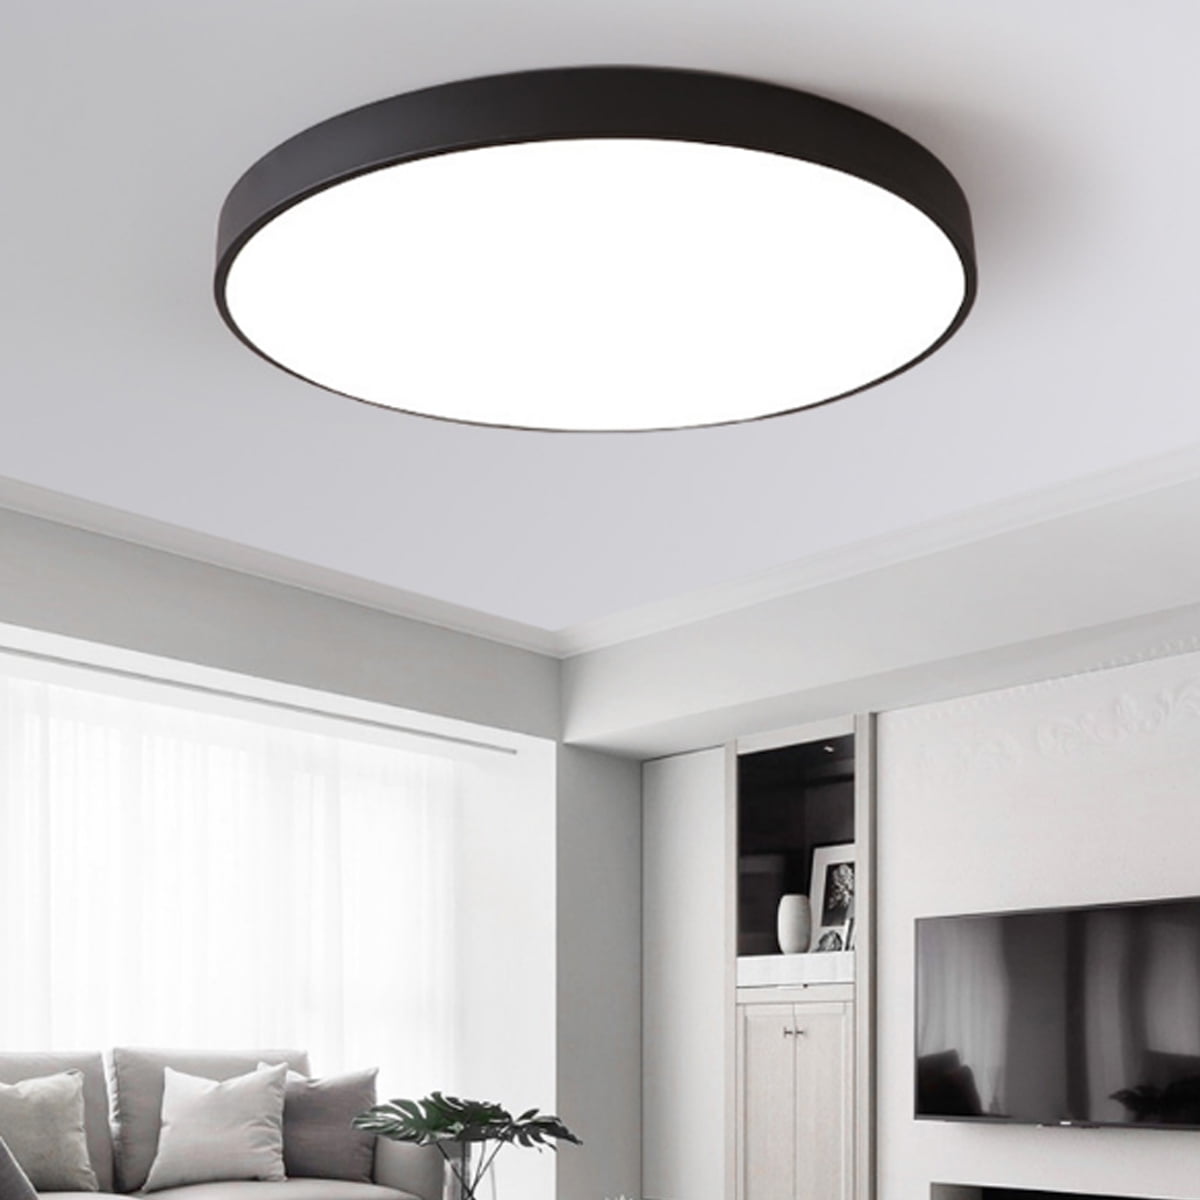 Philips LED Bliss Ceiling Light 40-55-30K 35W for Indoor Lighting Cool White Black Livingroom and Bedroom.